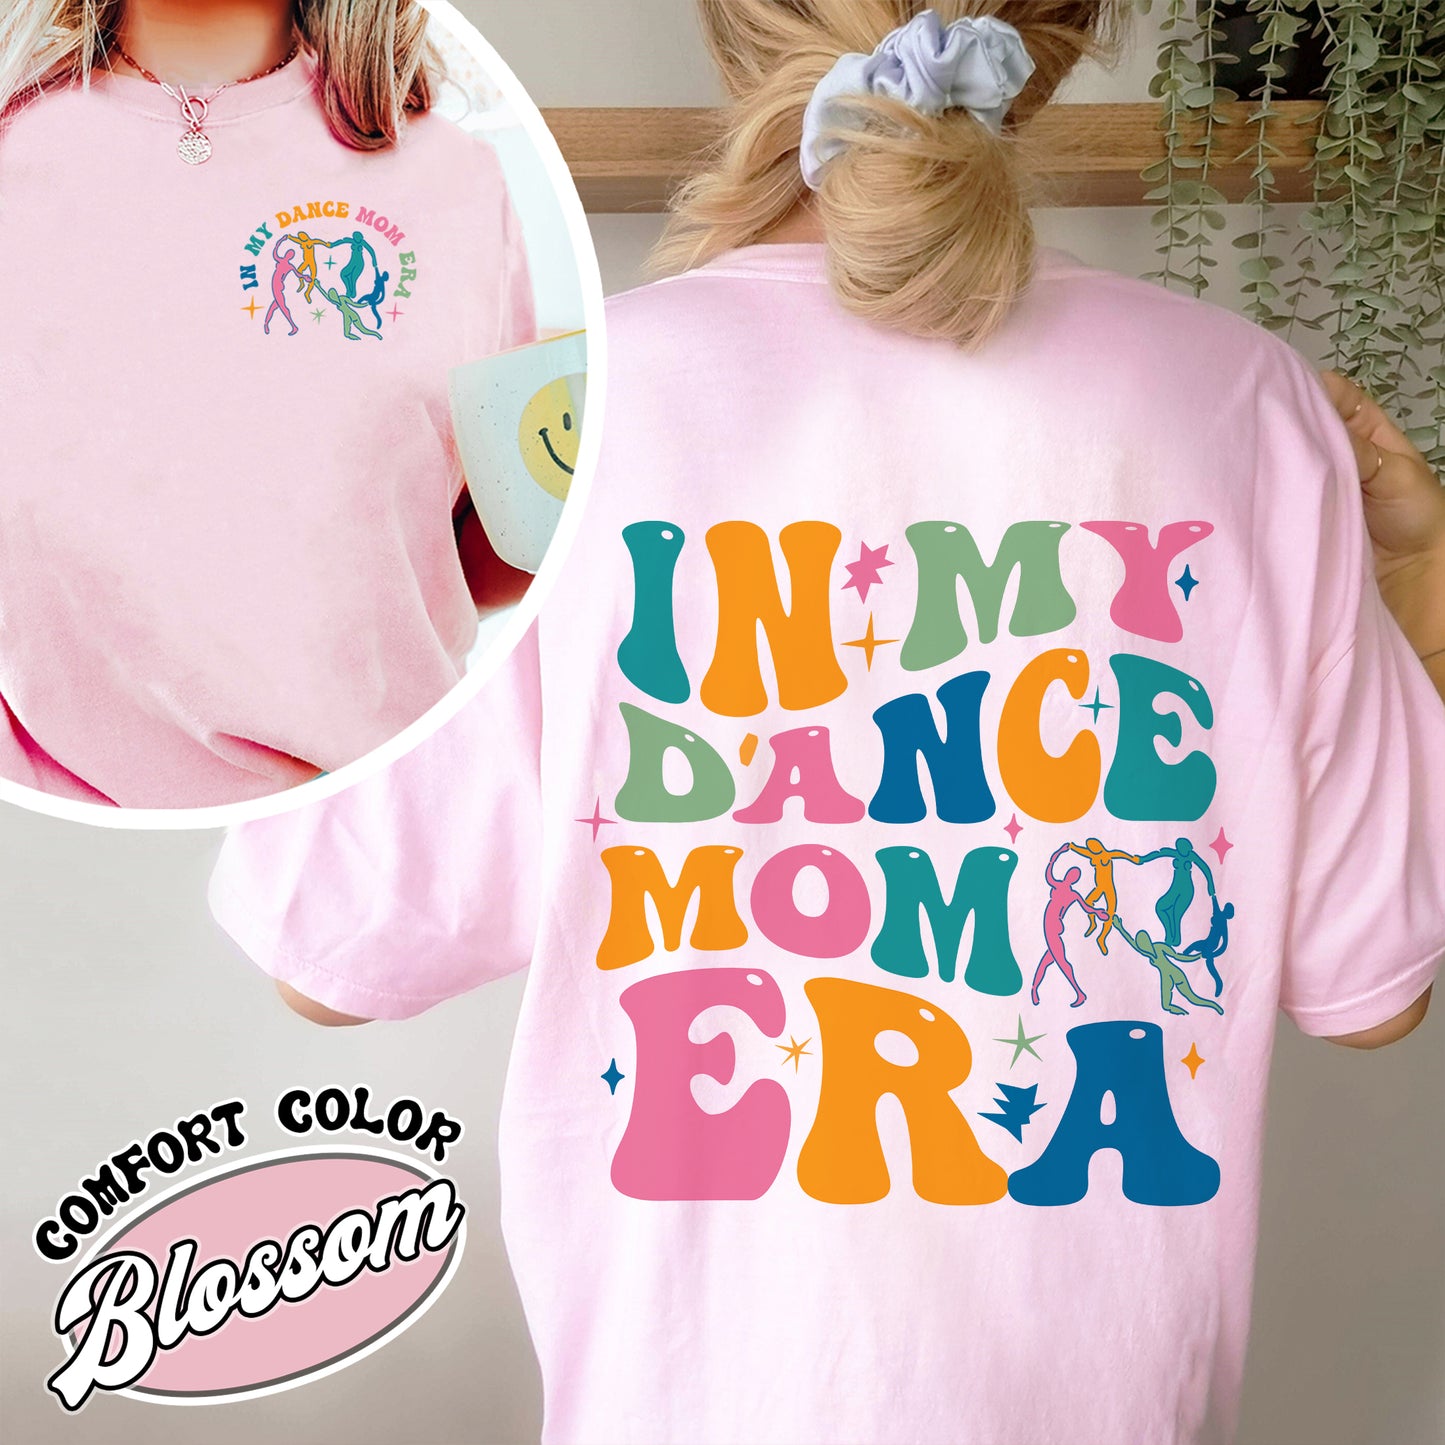 In My Dance Mom Era Comfort Color Shirt, In My Dance Mom Era, In My Dance Mom Era Shirt, Dance Mama Shirt, Dancer Shirt For Mom, Dance Mom Era